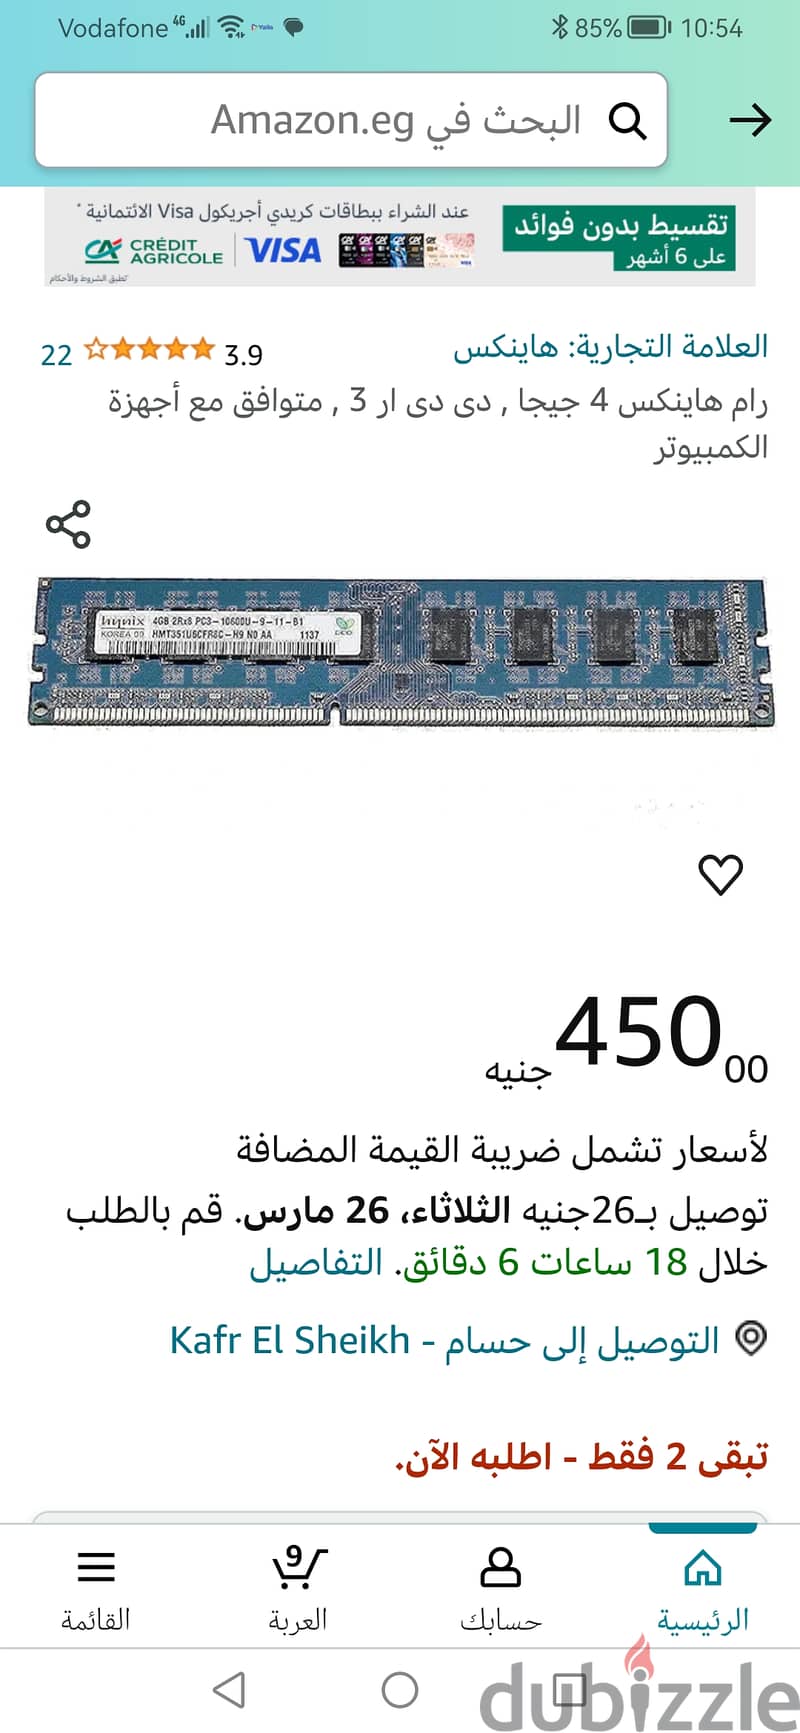 ٨ جيجا رام (٢ × ٤ جيجا) DDR3. هاينكس كورى/ 600 جنيه 2